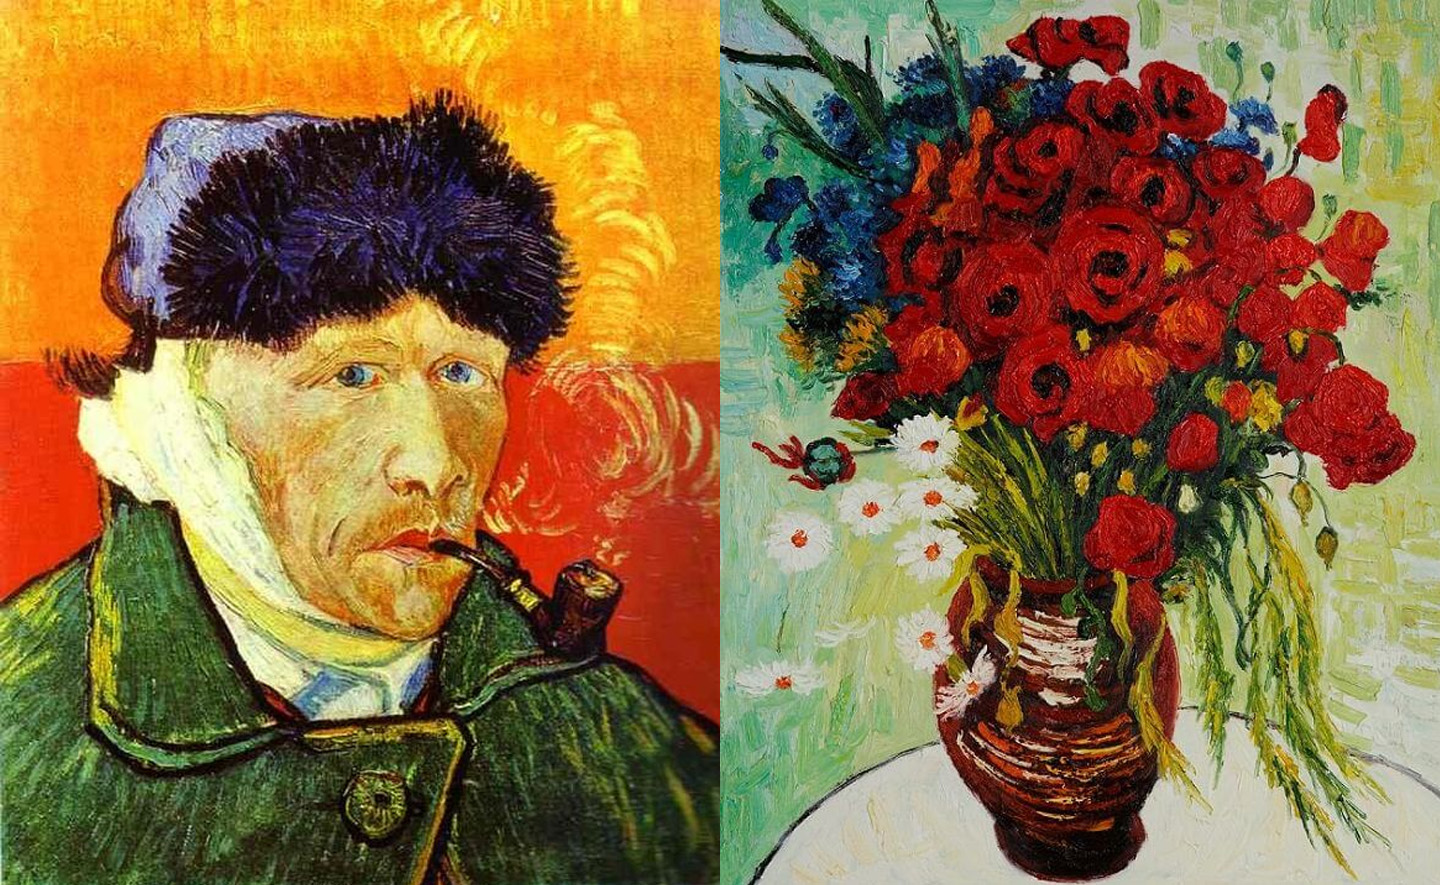  ''Bình hoa cúc và hoa anh túc'': Bức tranh của Van Gogh bị thất lạc đến giờ vẫn chưa có tung tích